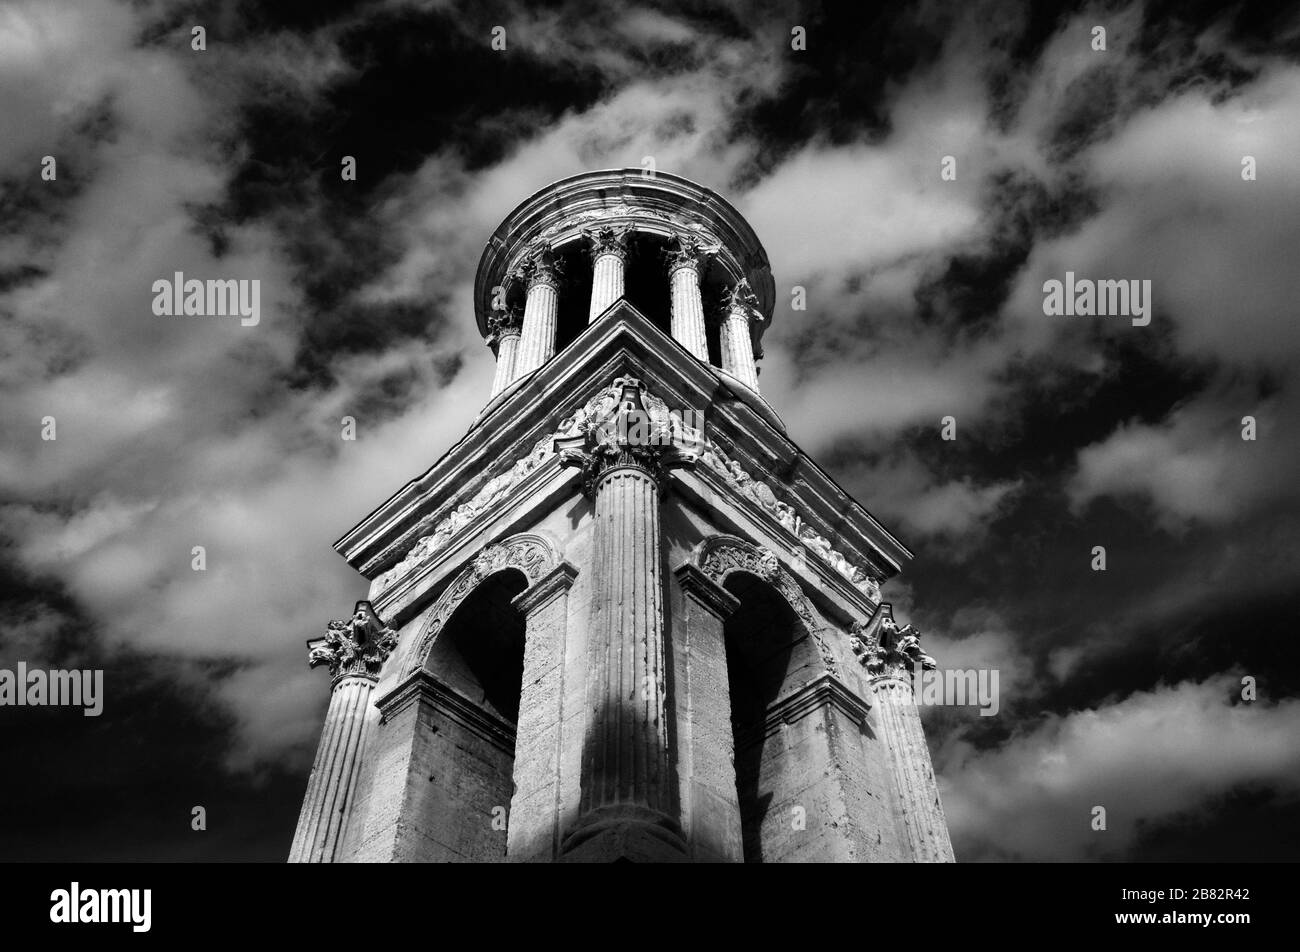 Immagine a infrarossi, monocromatica o in bianco e nero di Les Antiques o Mausoleo Romano del Julii (c40BC) Glanum Saint-Rémy-de-Provence Provenza Francia Foto Stock